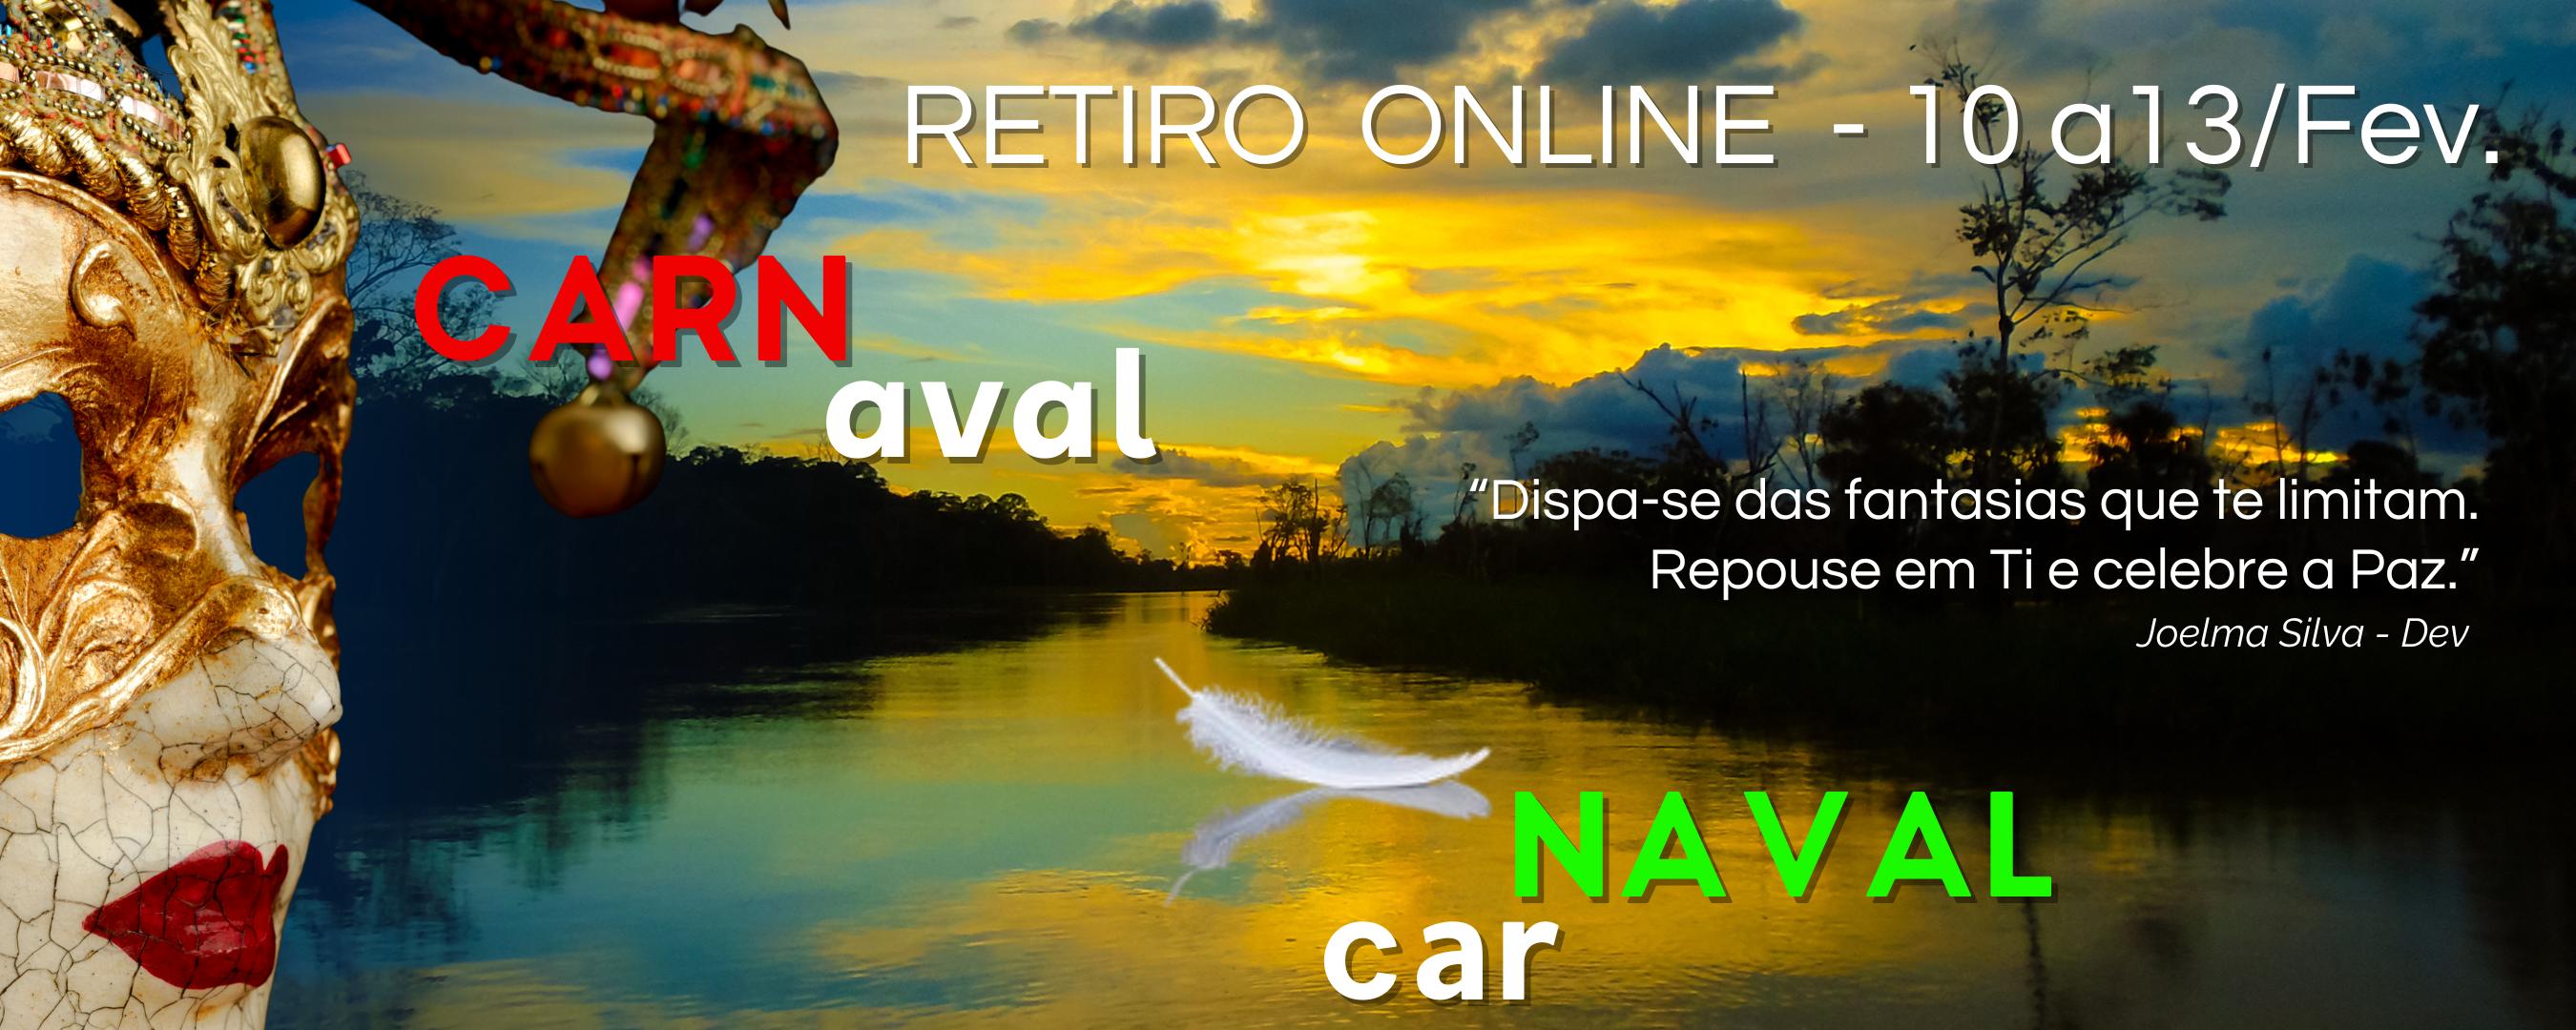 Capa do Retiro online